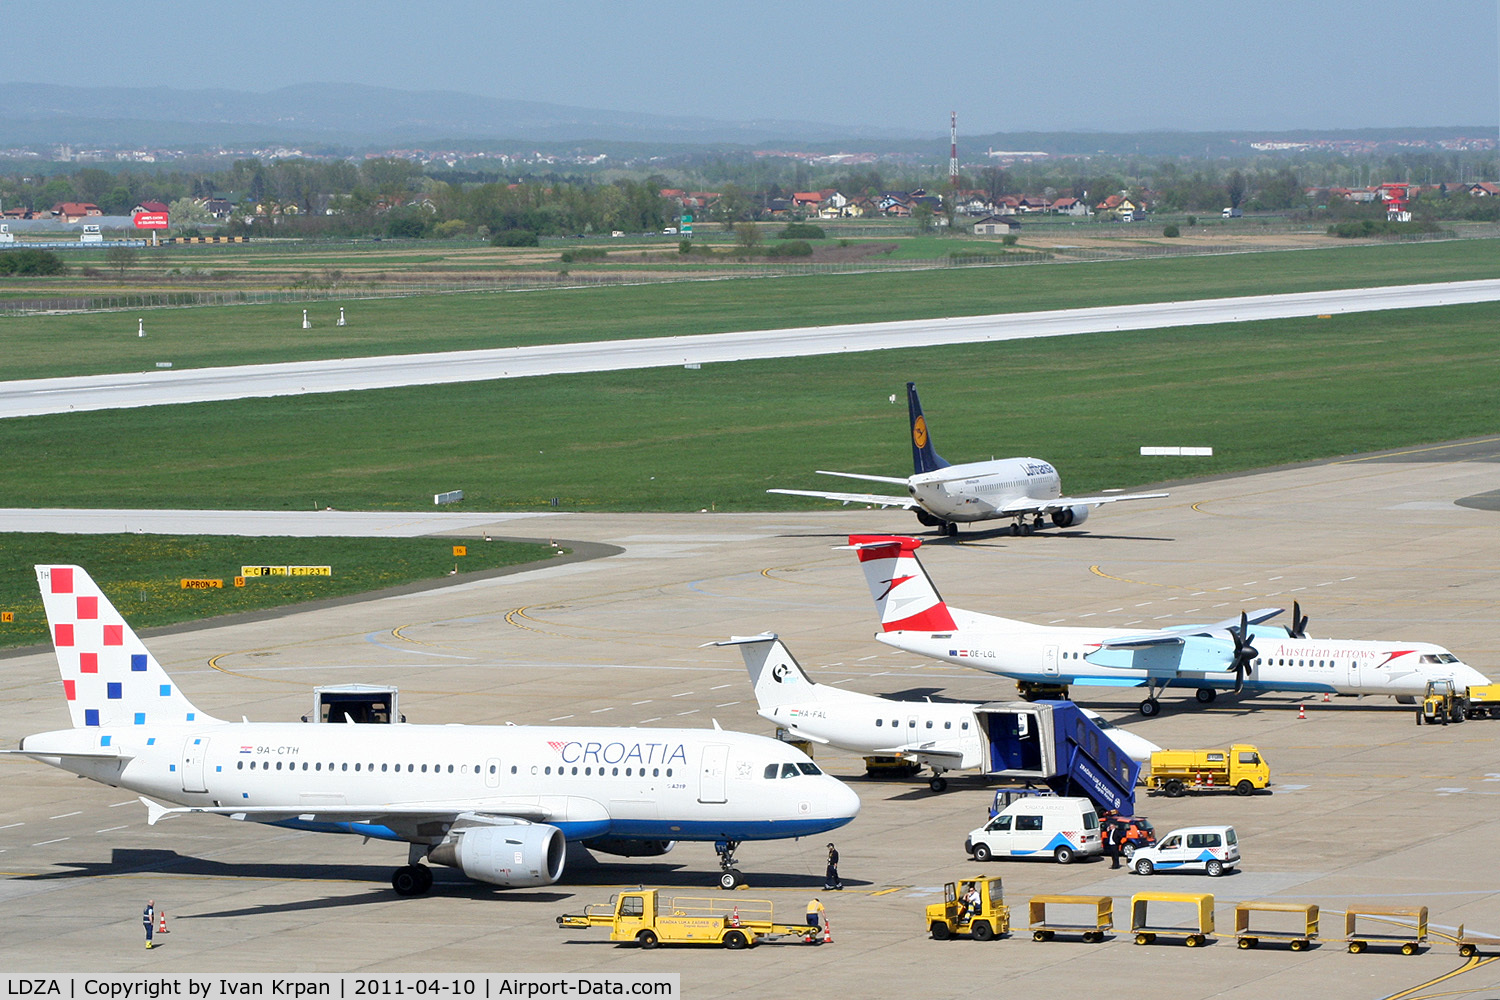 Zagreb Pleso Airport, Zagreb Croatia (LDZA) Photo